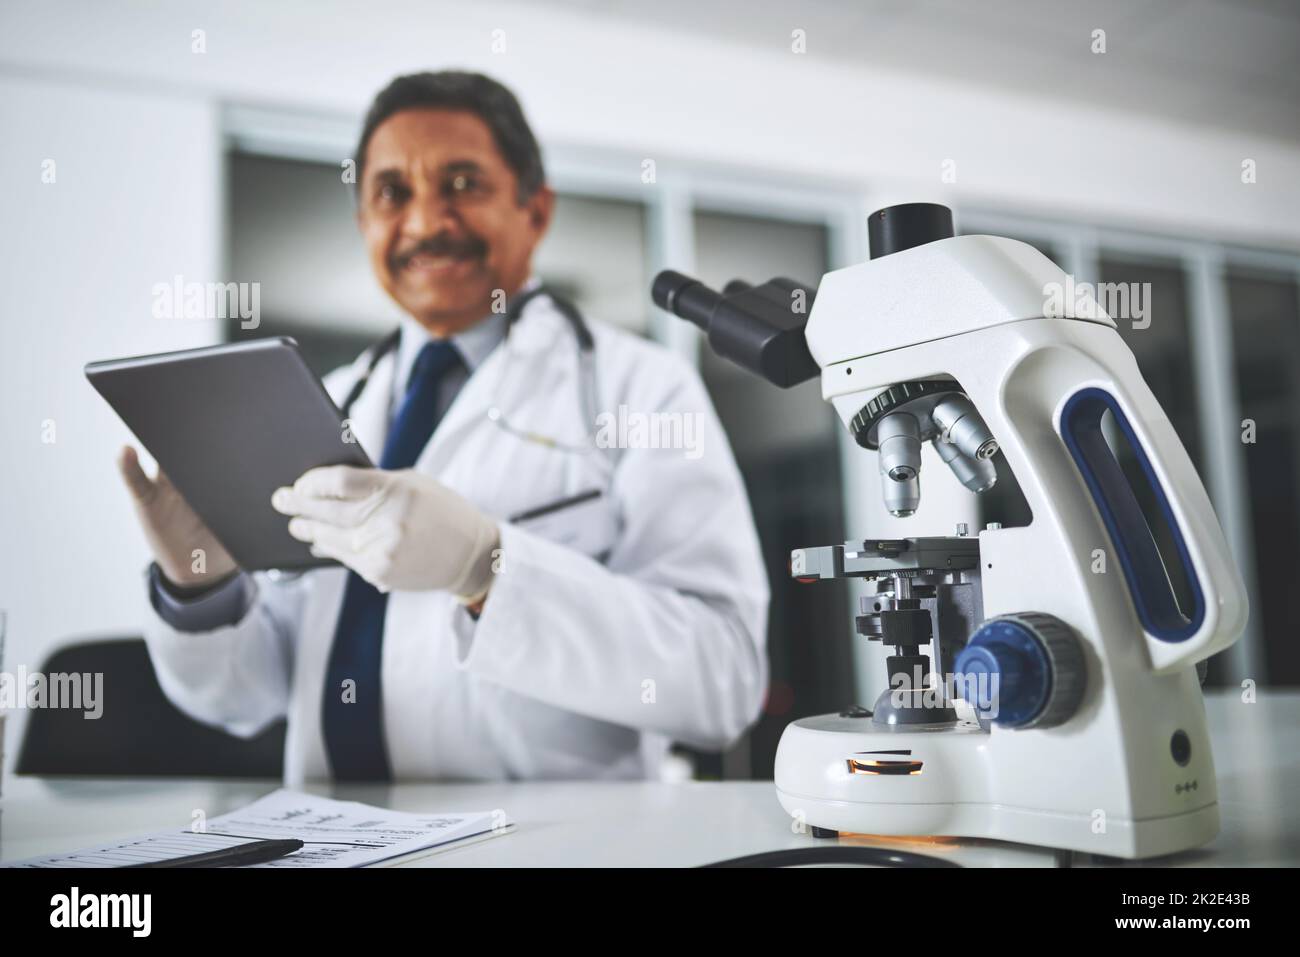 La recherche médicale qui fait la différence. Cliché d'un microscope sur une table de laboratoire avec un scientifique utilisant une tablette numérique en arrière-plan. Banque D'Images